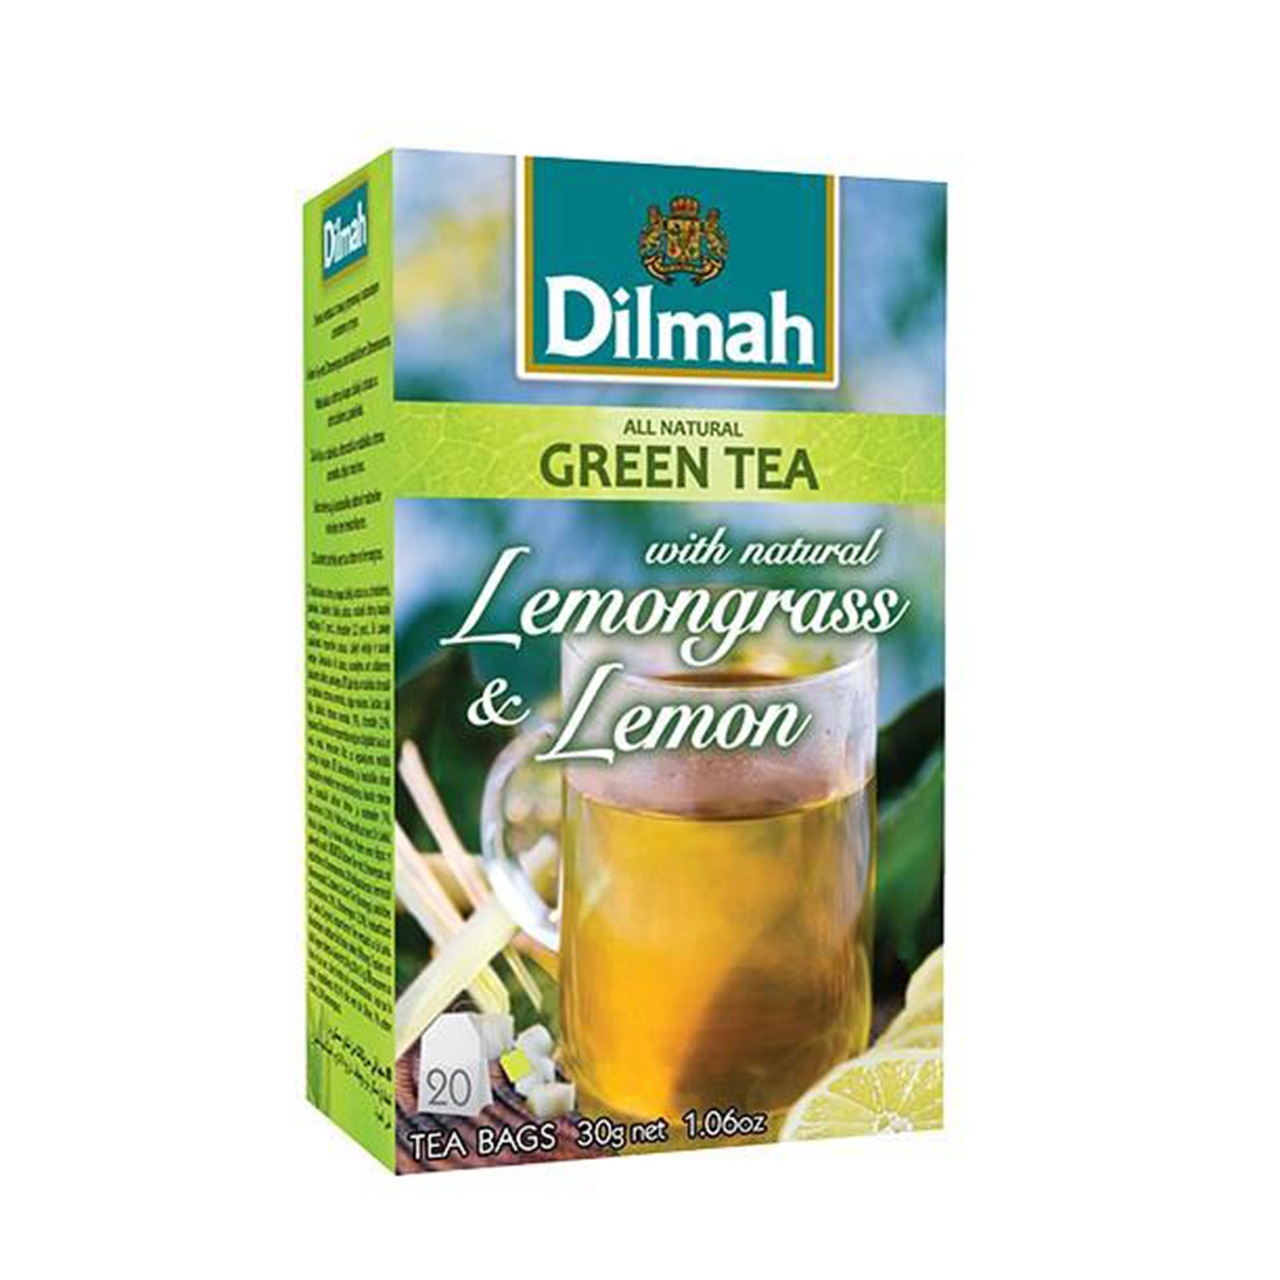 چای سبز دیلما با طعم با لیمو مدل D8 بسته 20 عددی